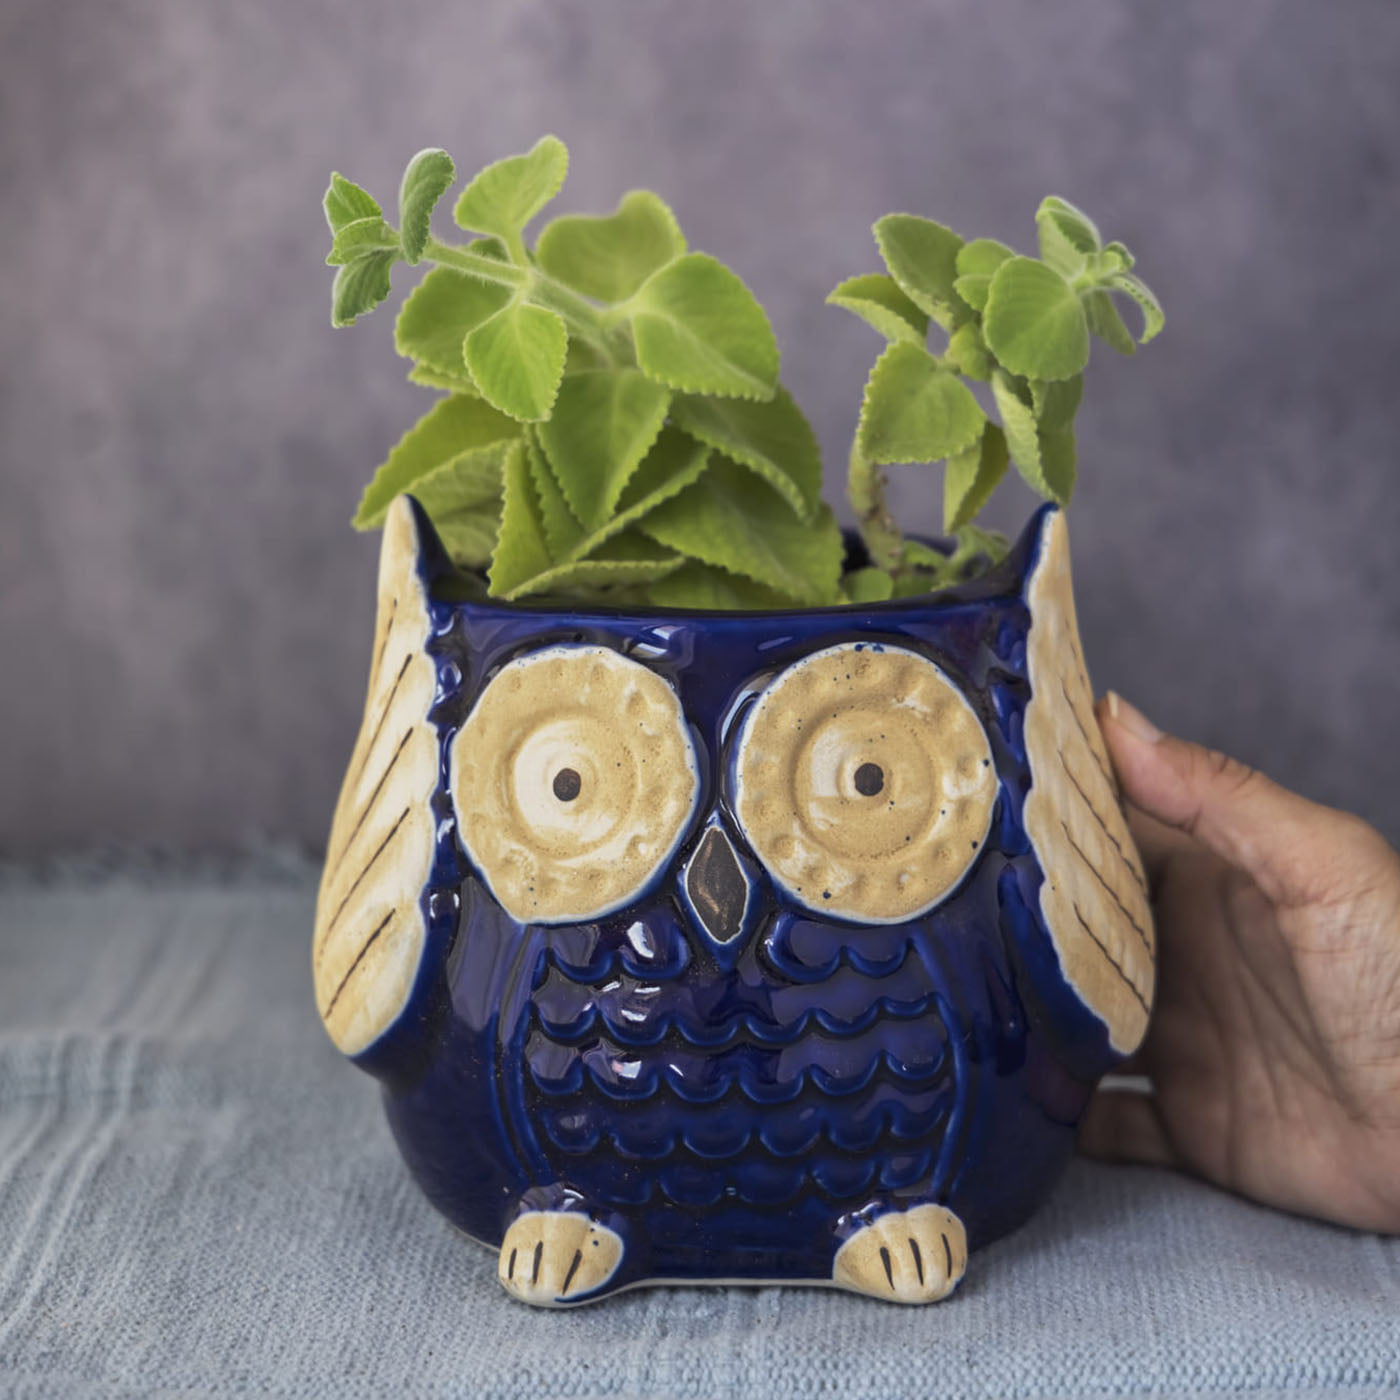 Garden Gleams Blue Owl Planter Pot